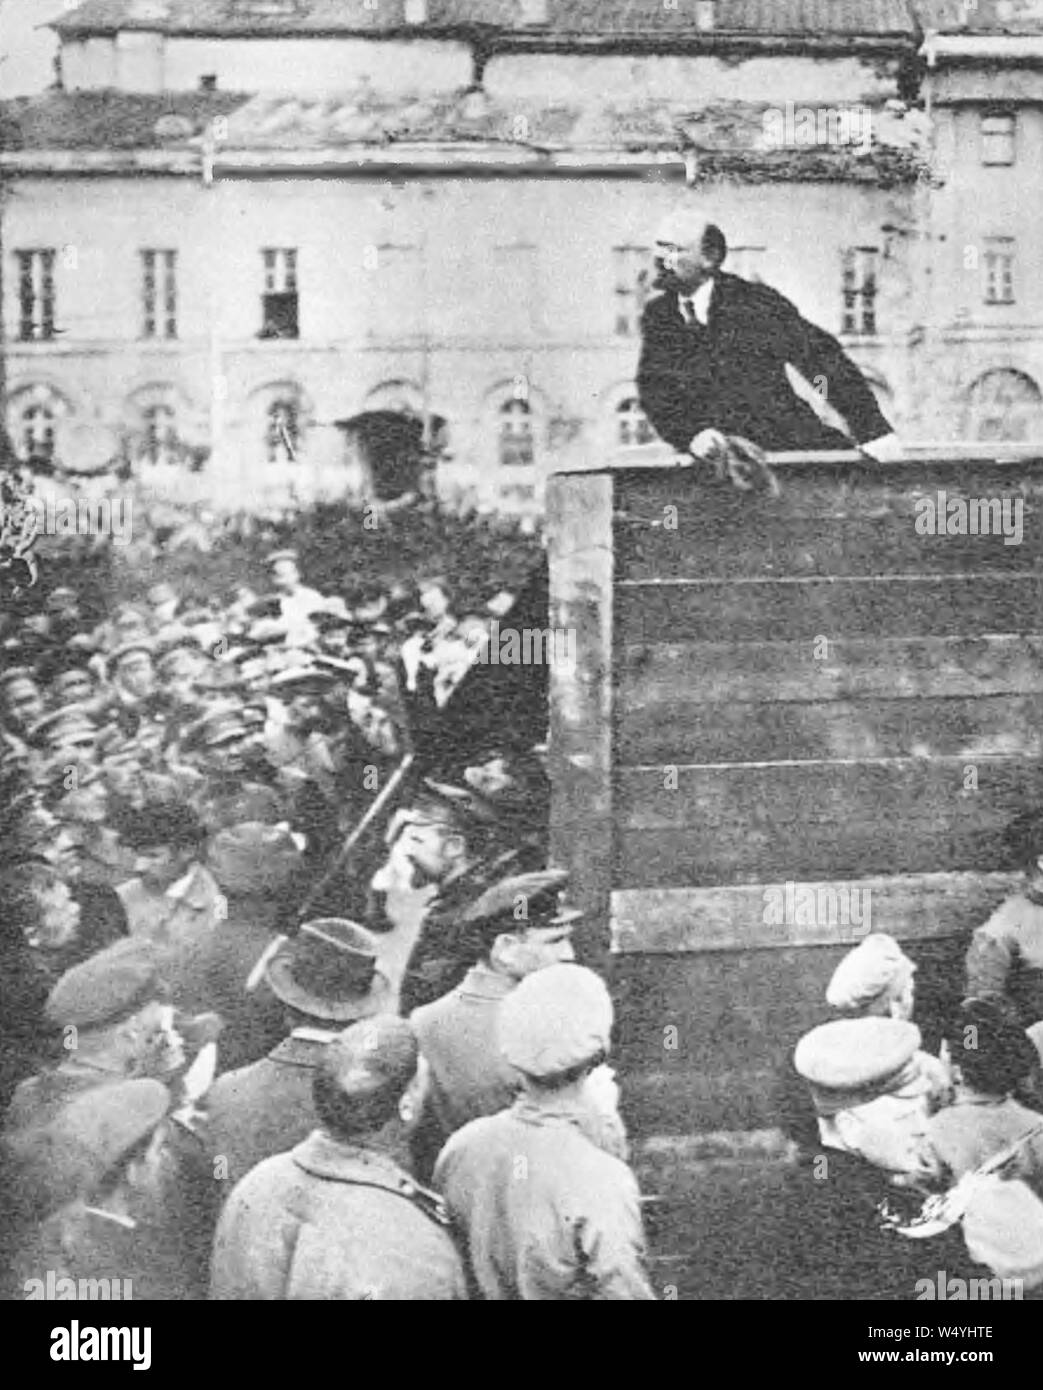 Croped version Vladimir Lenin Leon Trotsky Lev Kamenev 1920 v1. Stock Photo